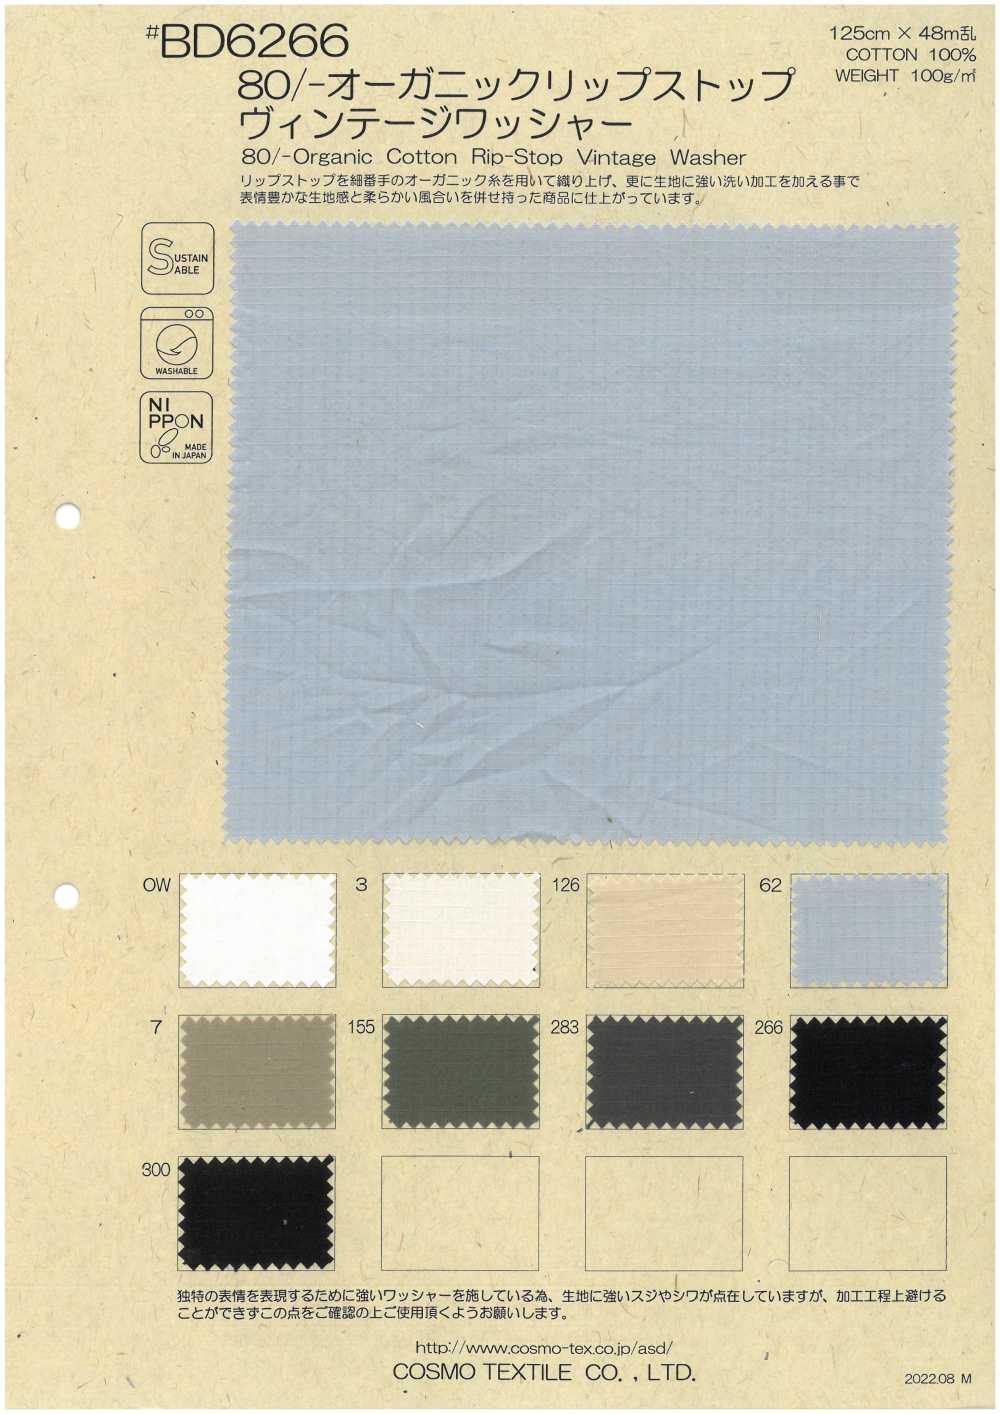 BD6266 Ripstop En Coton Biologique 80/- Avec Rondelles Vintage[Fabrication De Textile] COSMO TEXTILE